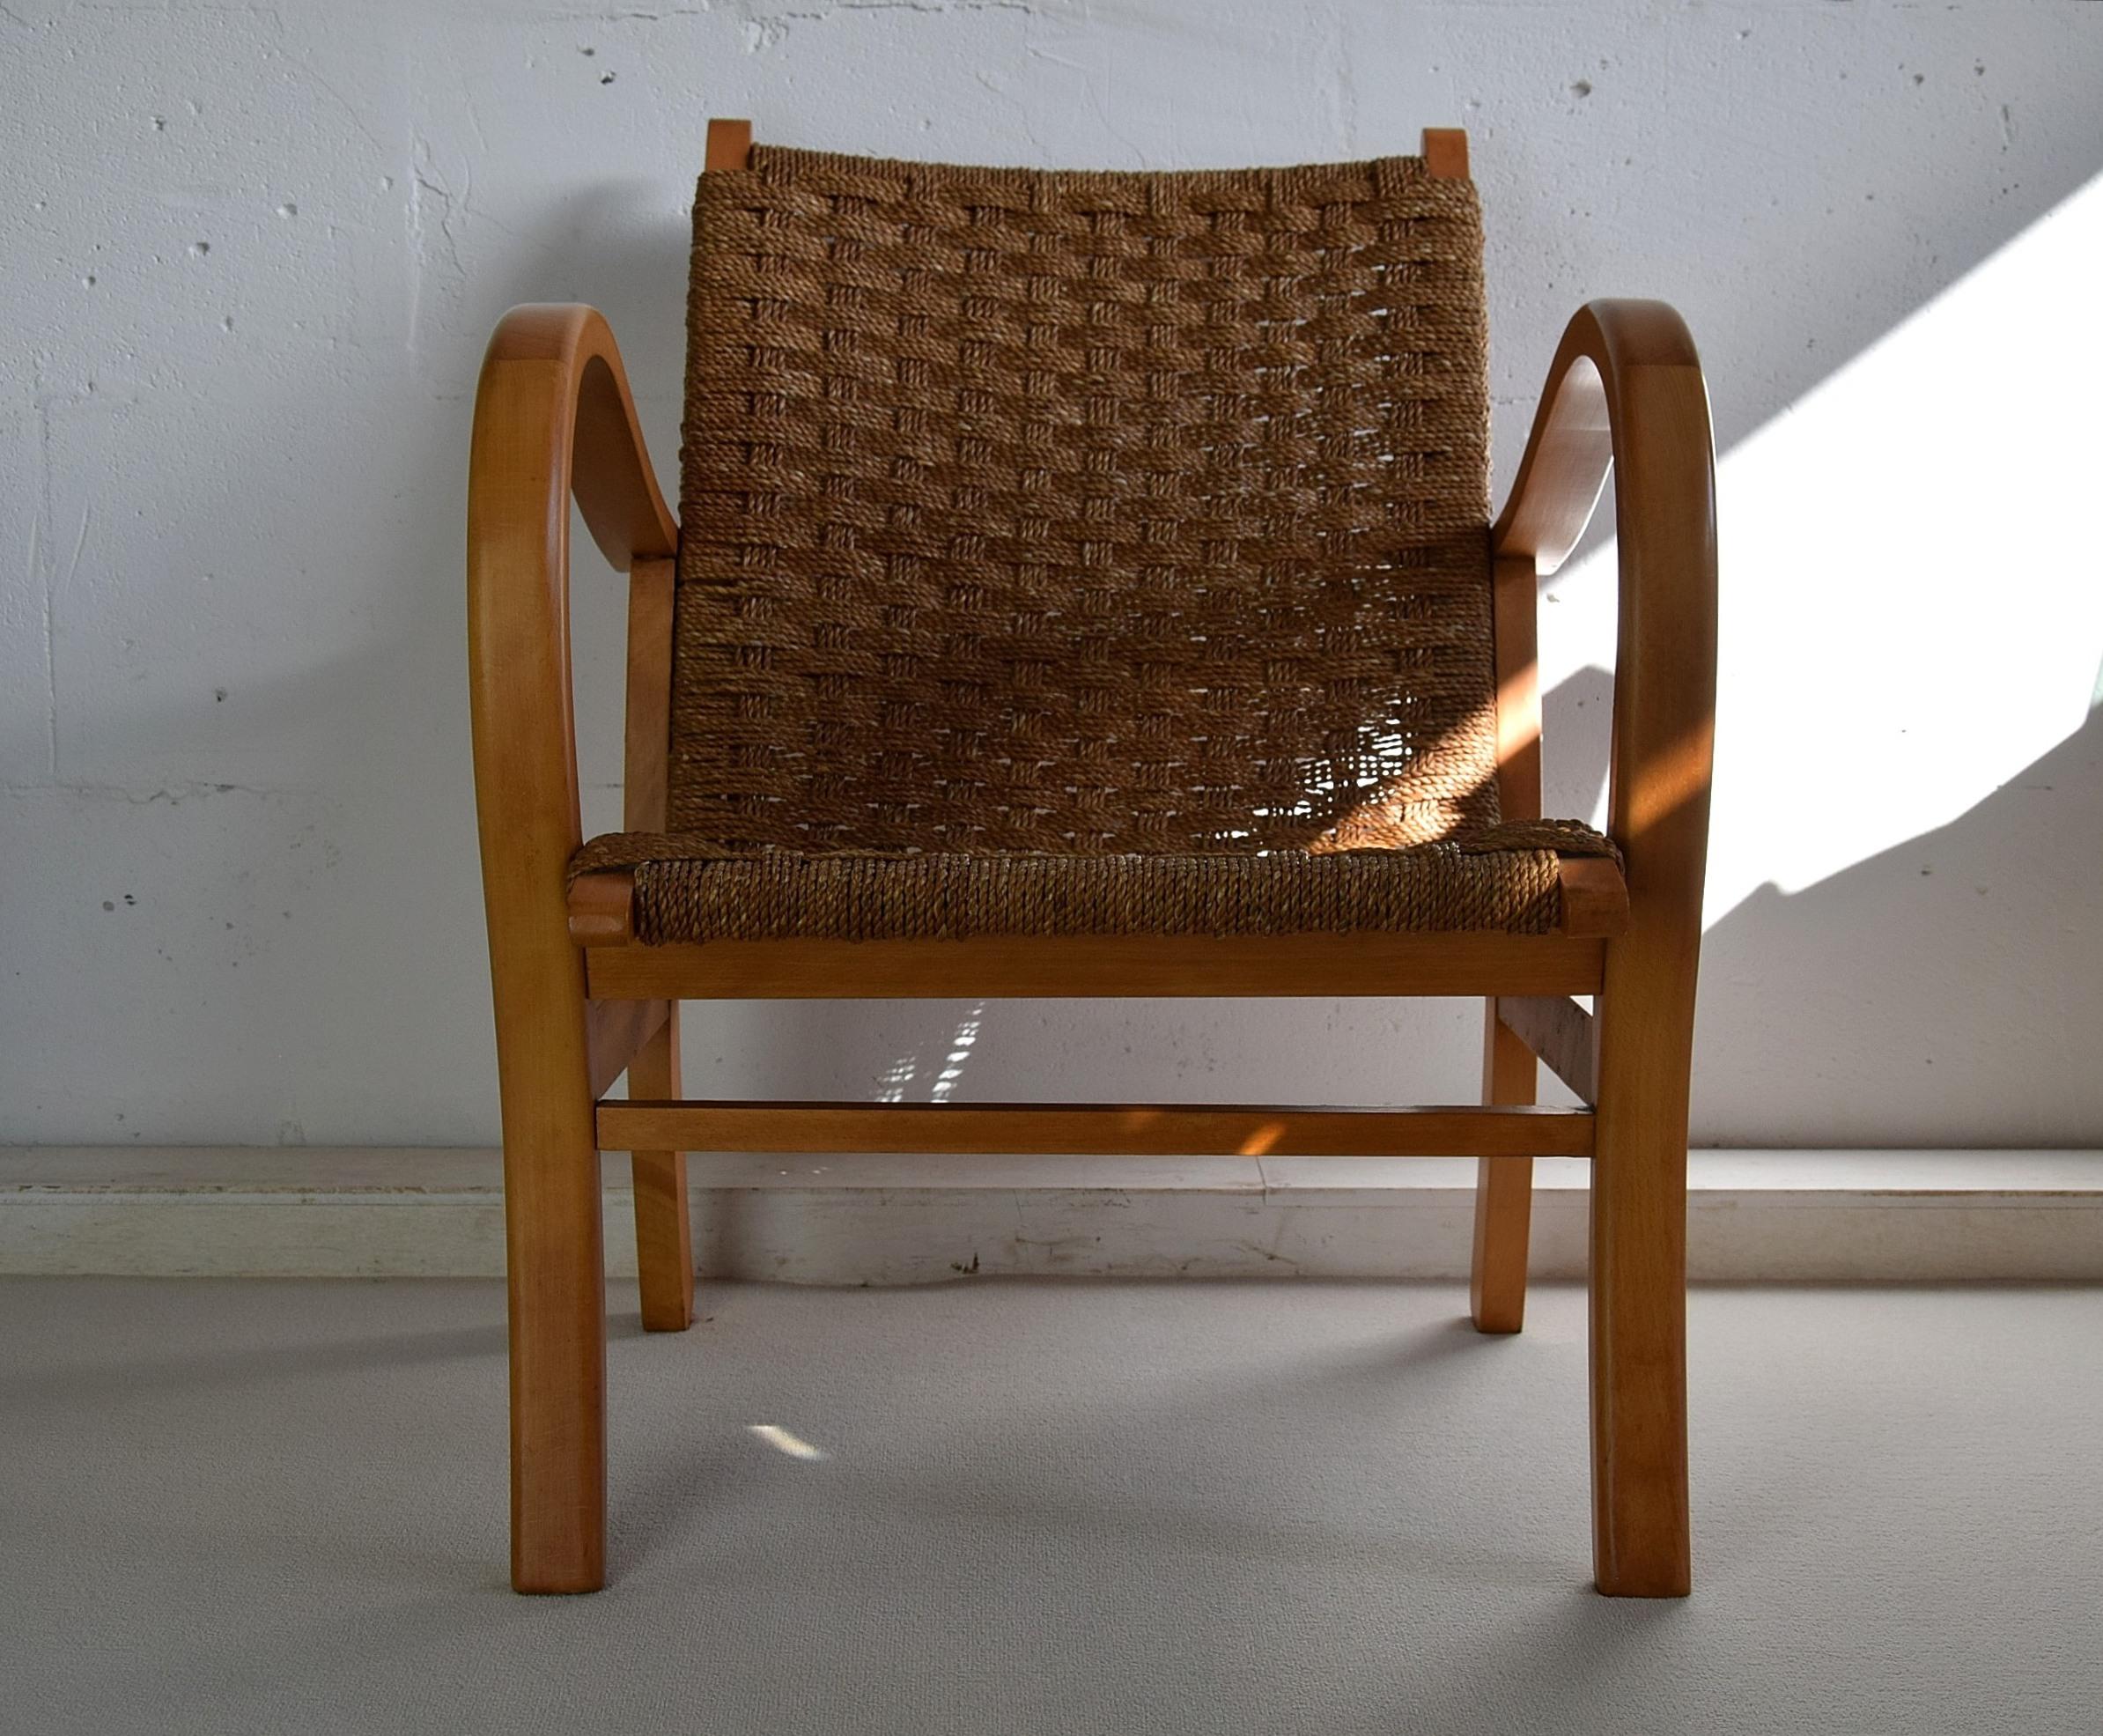 Erich Dieckmann, Bauhaus-Sessel aus Buche und Papierkordel, Deutschland, 1925.
Dies ist ein seltener Bauhaus-Sessel des deutschen Designers Erich Dieckmann aus den 1920er Jahren. Das Design folgt der Bauhaus-Philosophie, bei der die Form der